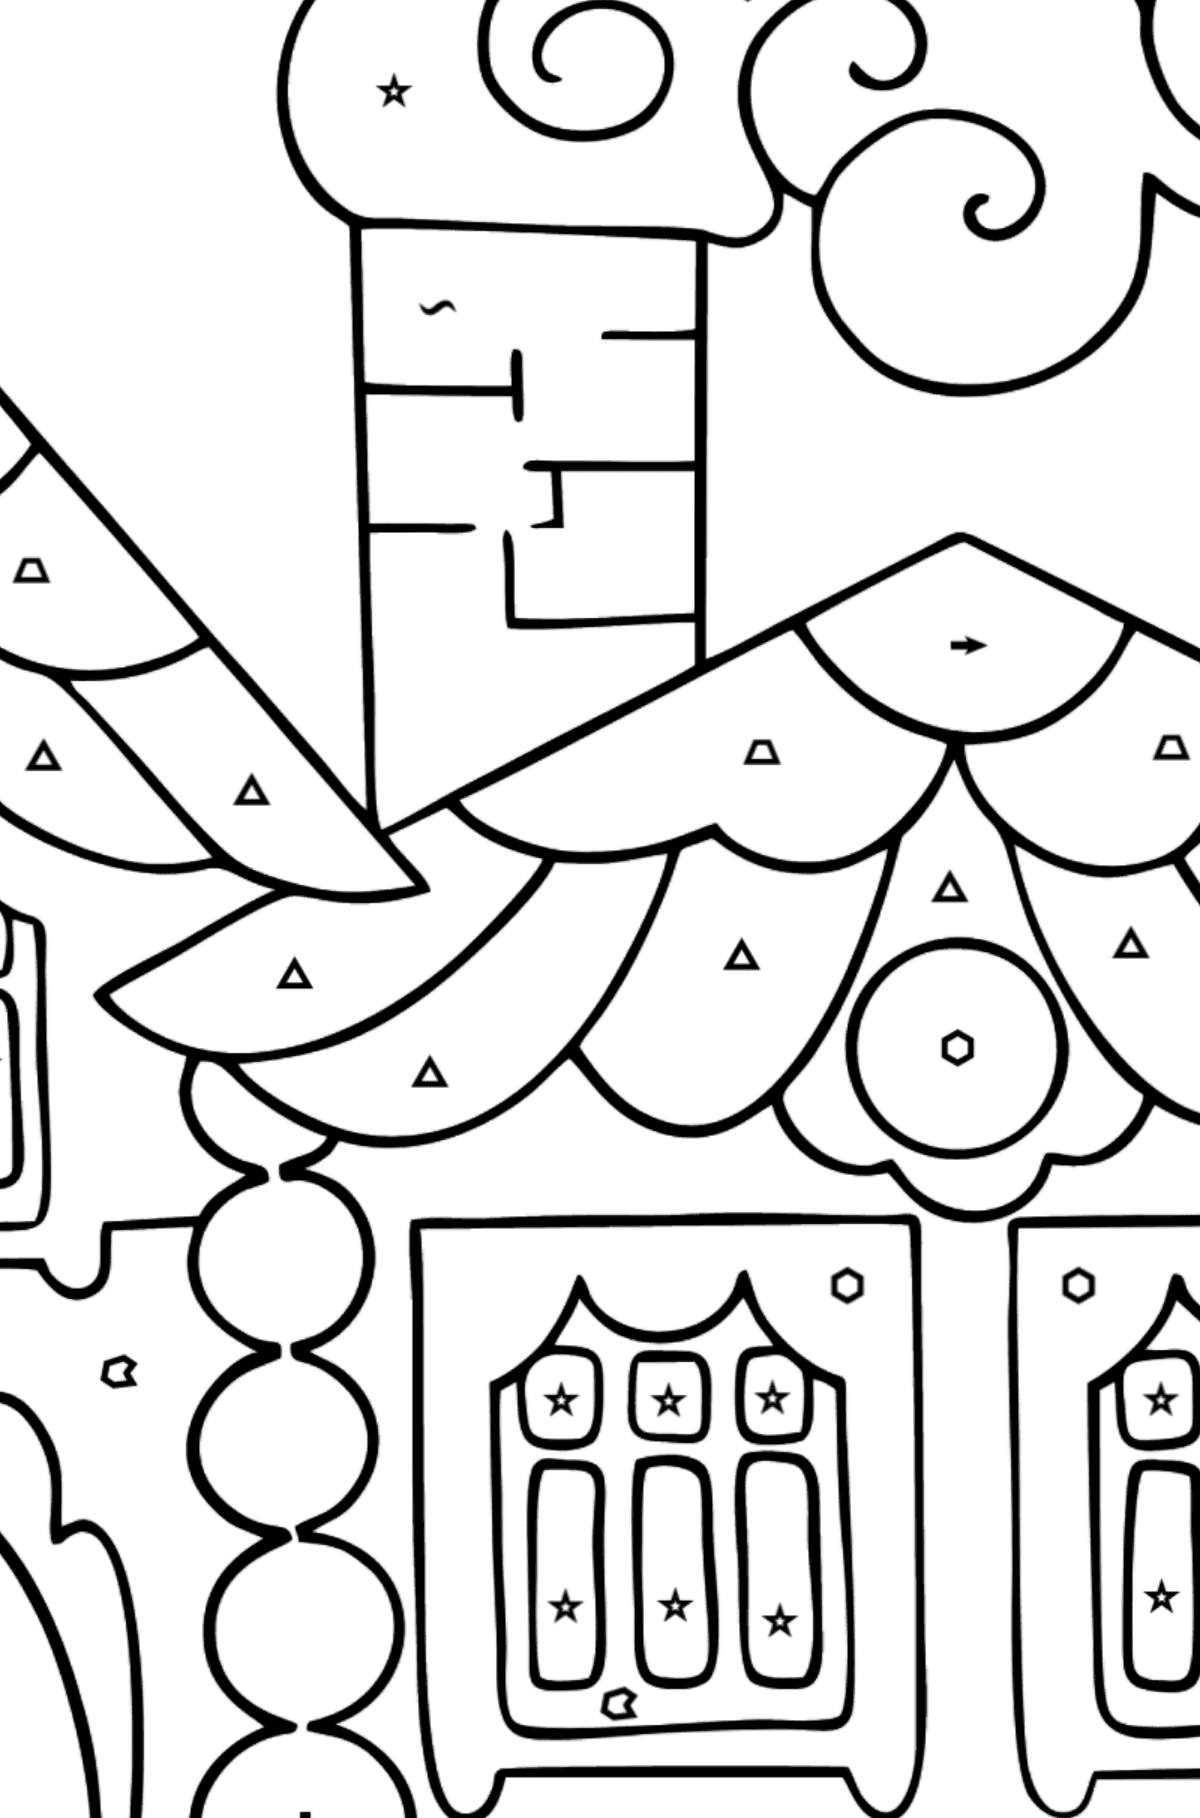 Dibujo para Colorear Casa en Bosque (difícil) - Colorear por Símbolos para Niños